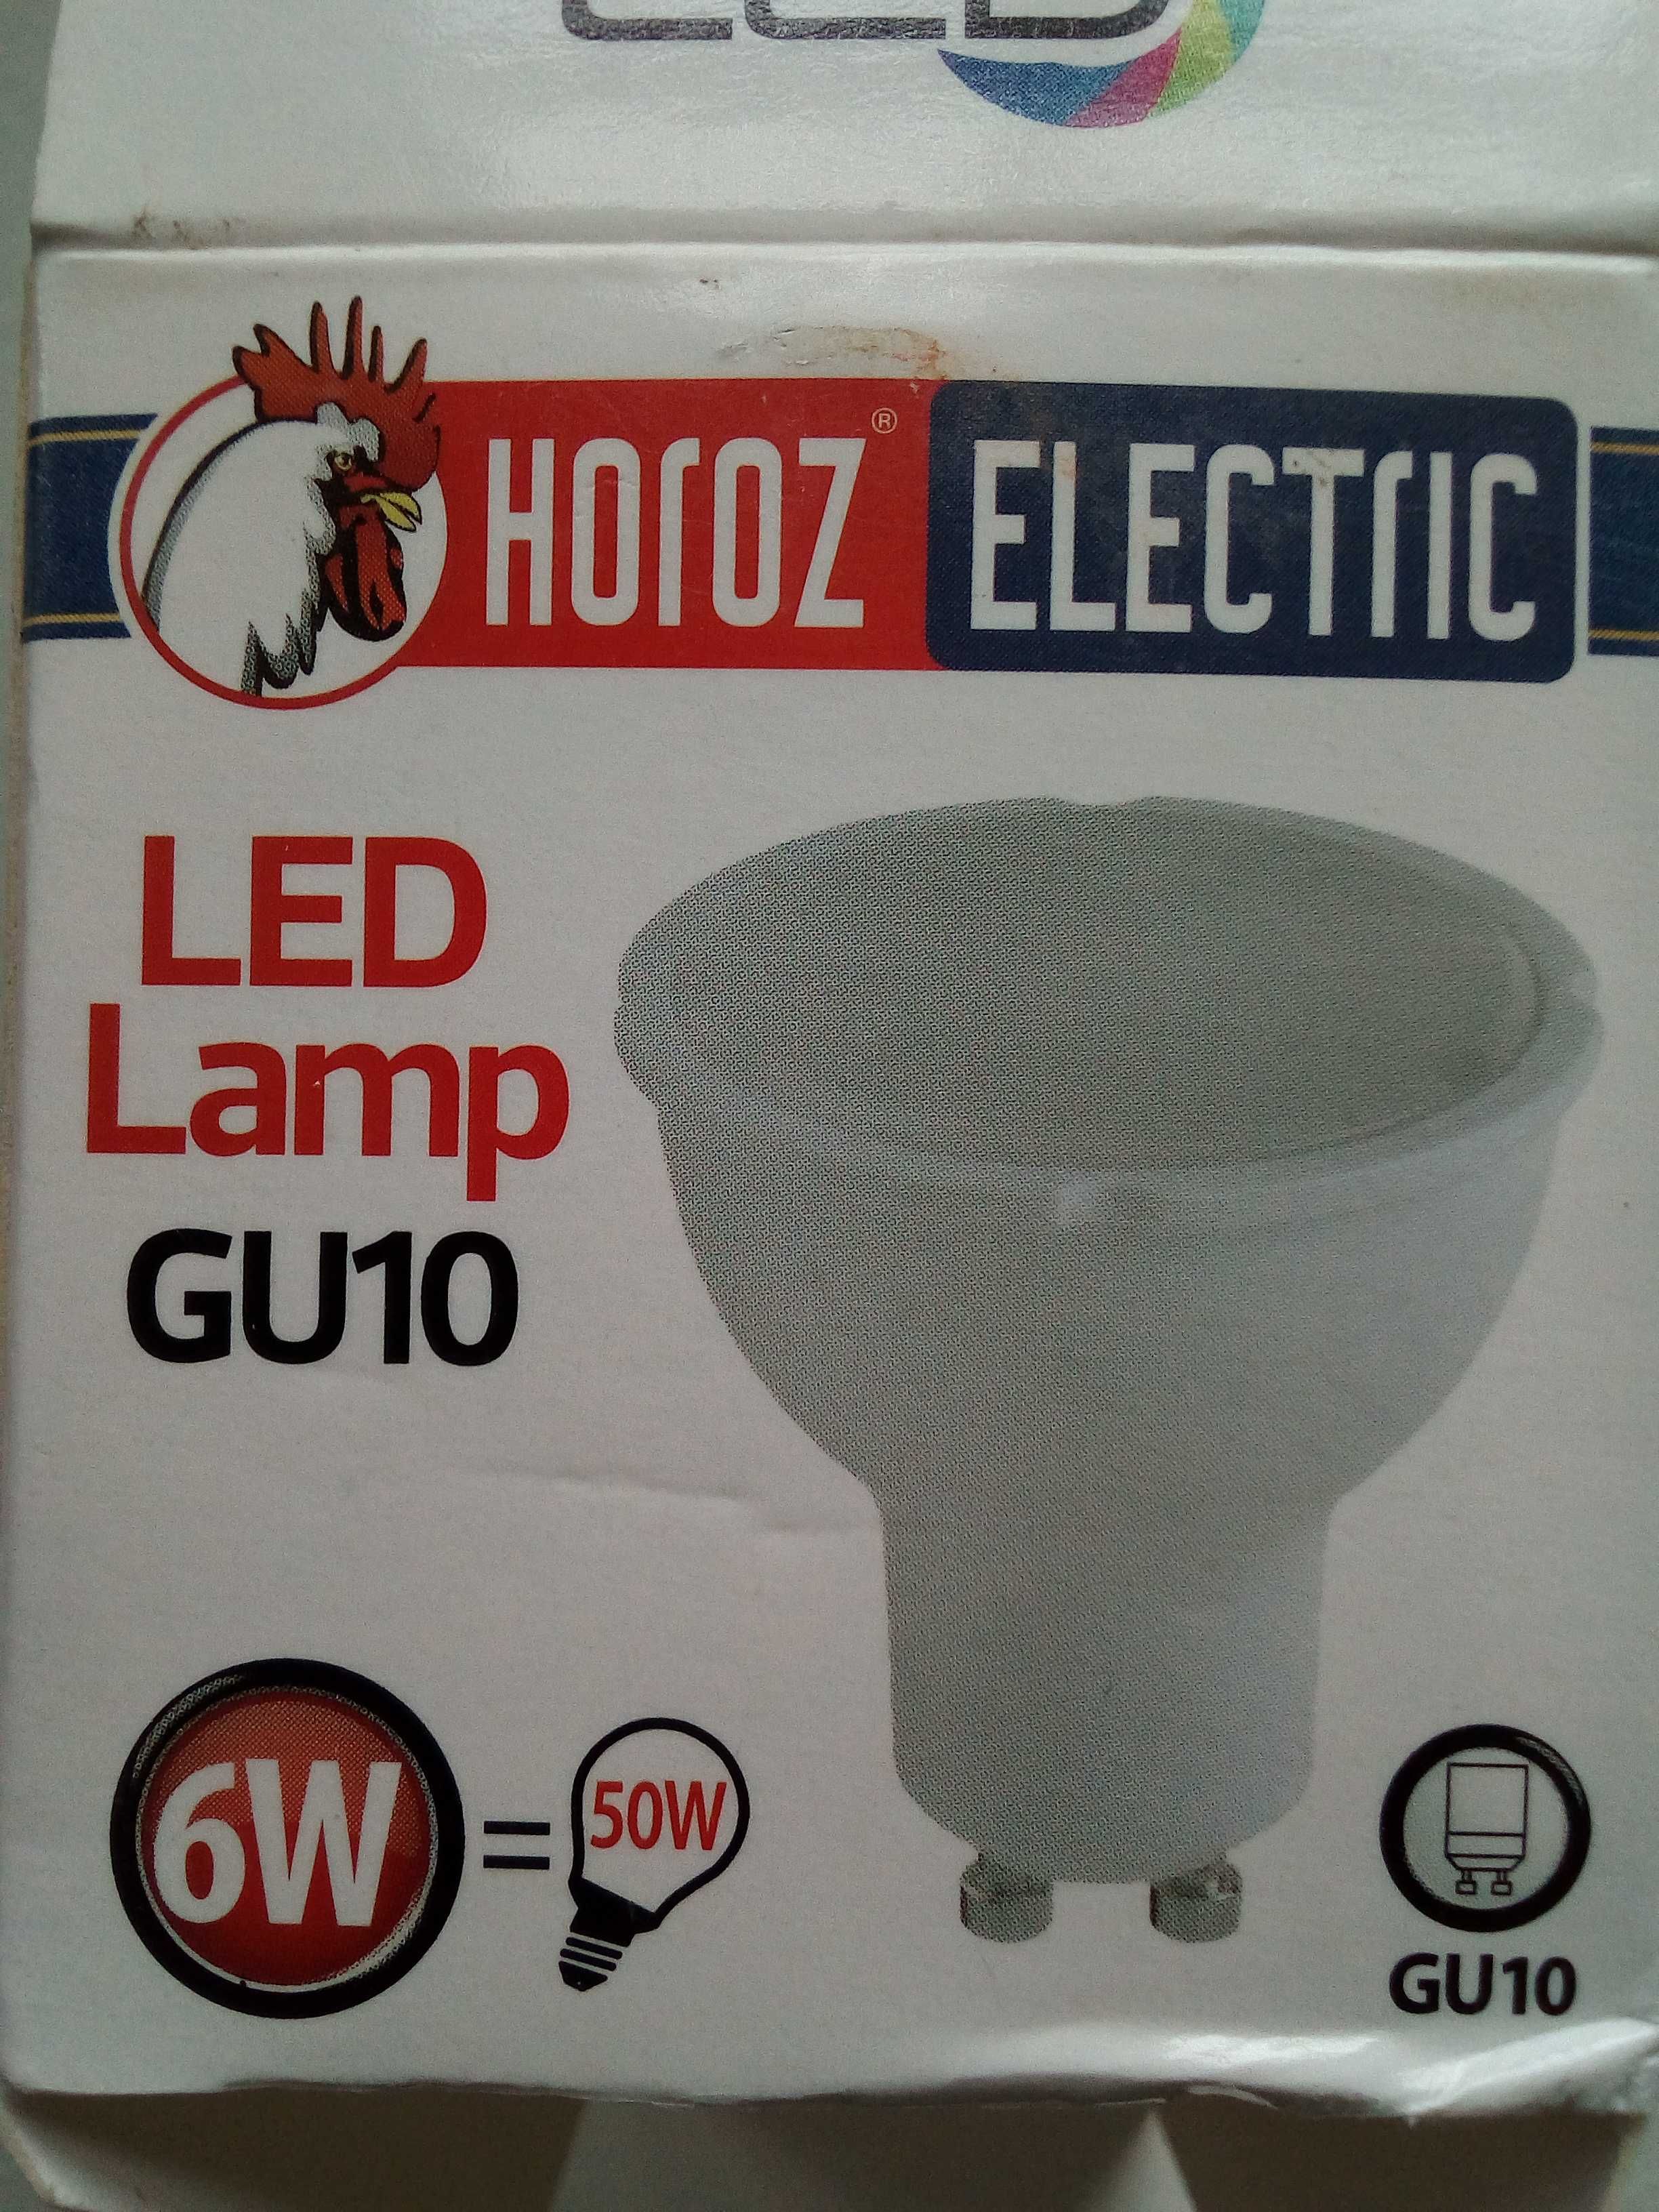 Лед лампочка GU 10 "Horoz electric" 6w 5 штук